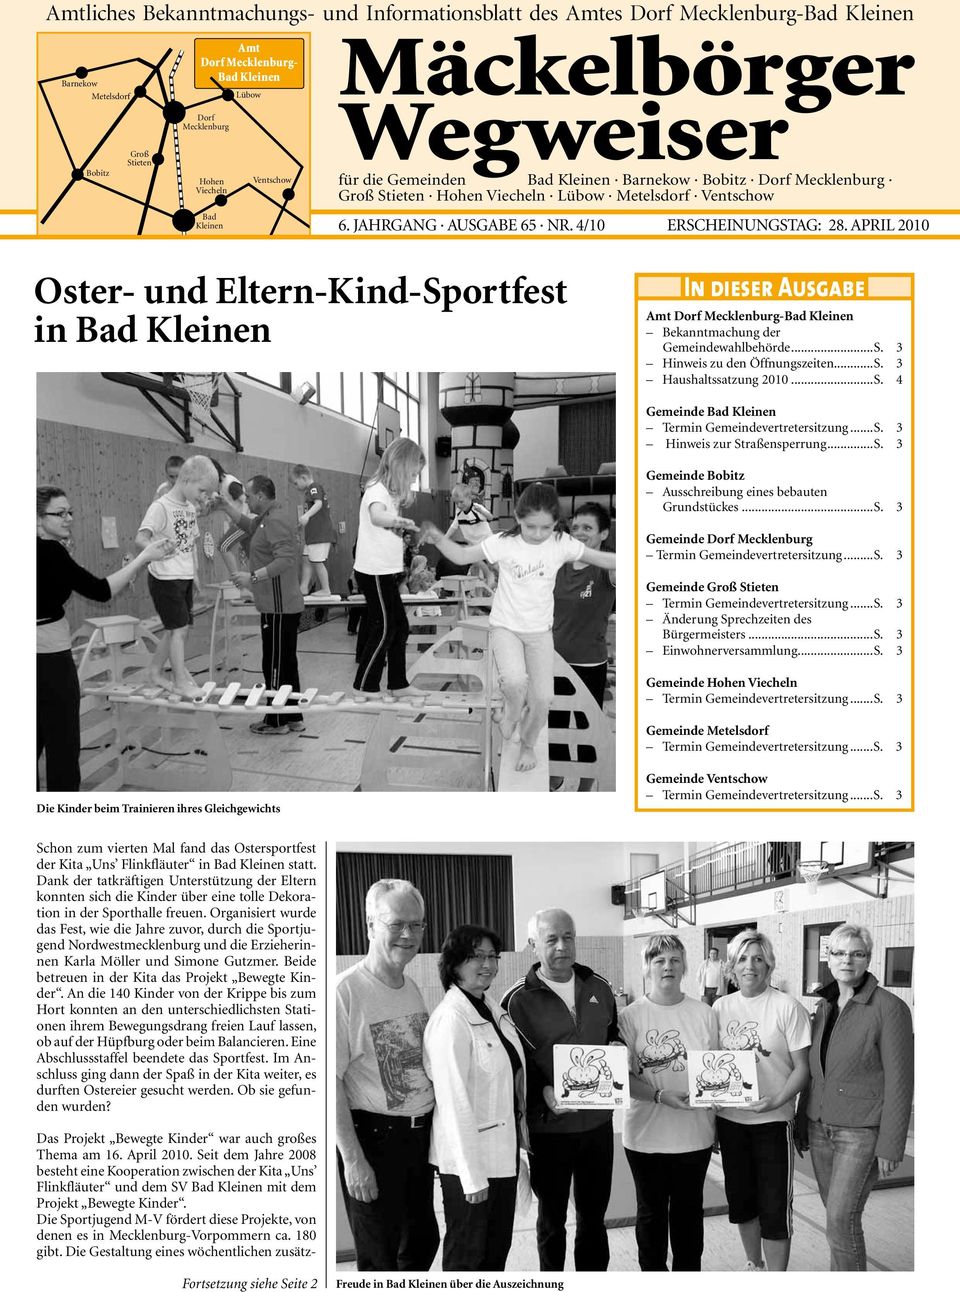 April 2010 Oster- und Eltern-Kind-Sportfest in Bad Kleinen In dieser Ausgabe Amt -Bad Kleinen Bekanntmachung der Gemeindewahlbehörde...S. 3 Hinweis zu den Öffnungszeiten...S. 3 Haushaltssatzung 2010.